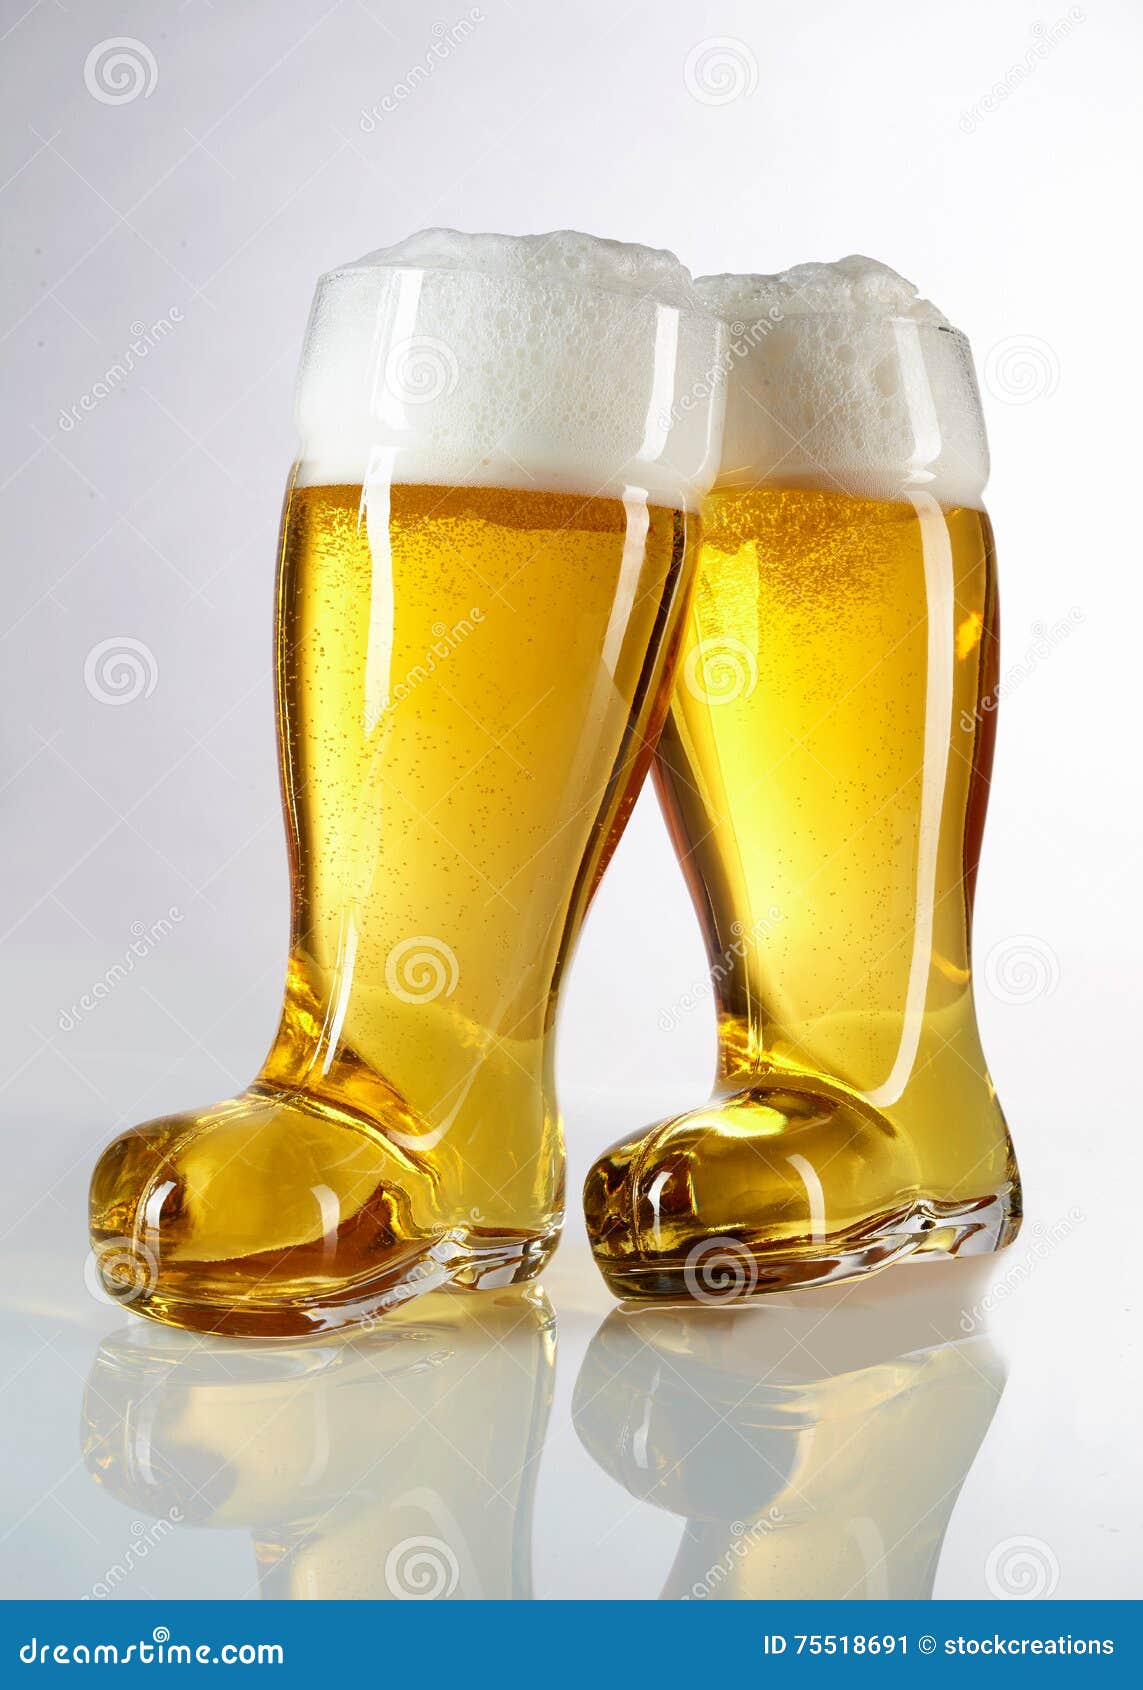 Matig Ontwijken composiet Glazen Van Het Nieuwigheids De Laars Gevormde Bier Stock Afbeelding - Image  of hoofd, heerlijk: 75518691